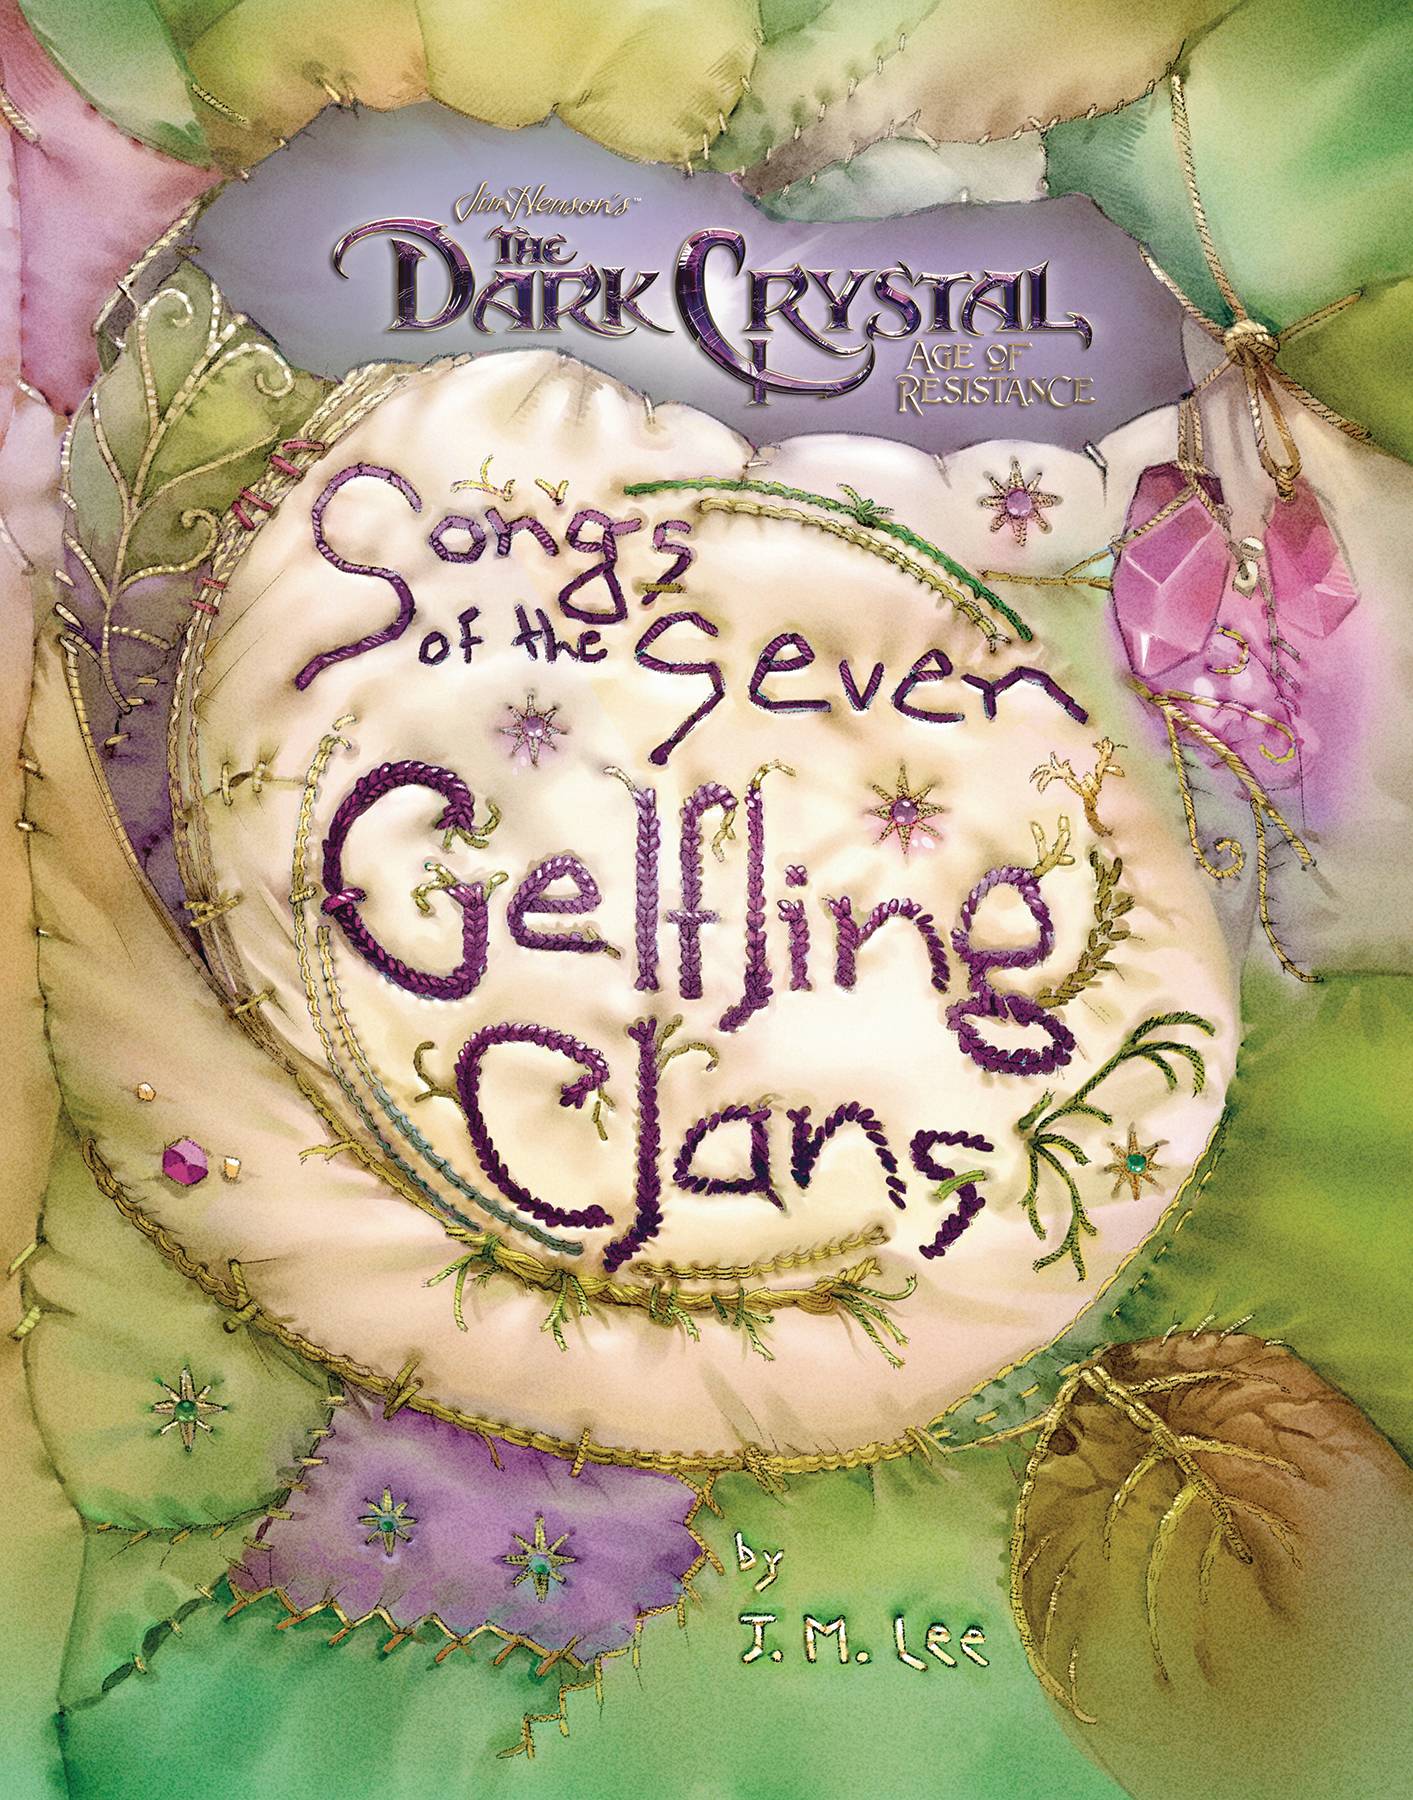 DARK CRYSTAL SONGS OF 7 GELFLING CLANS HC